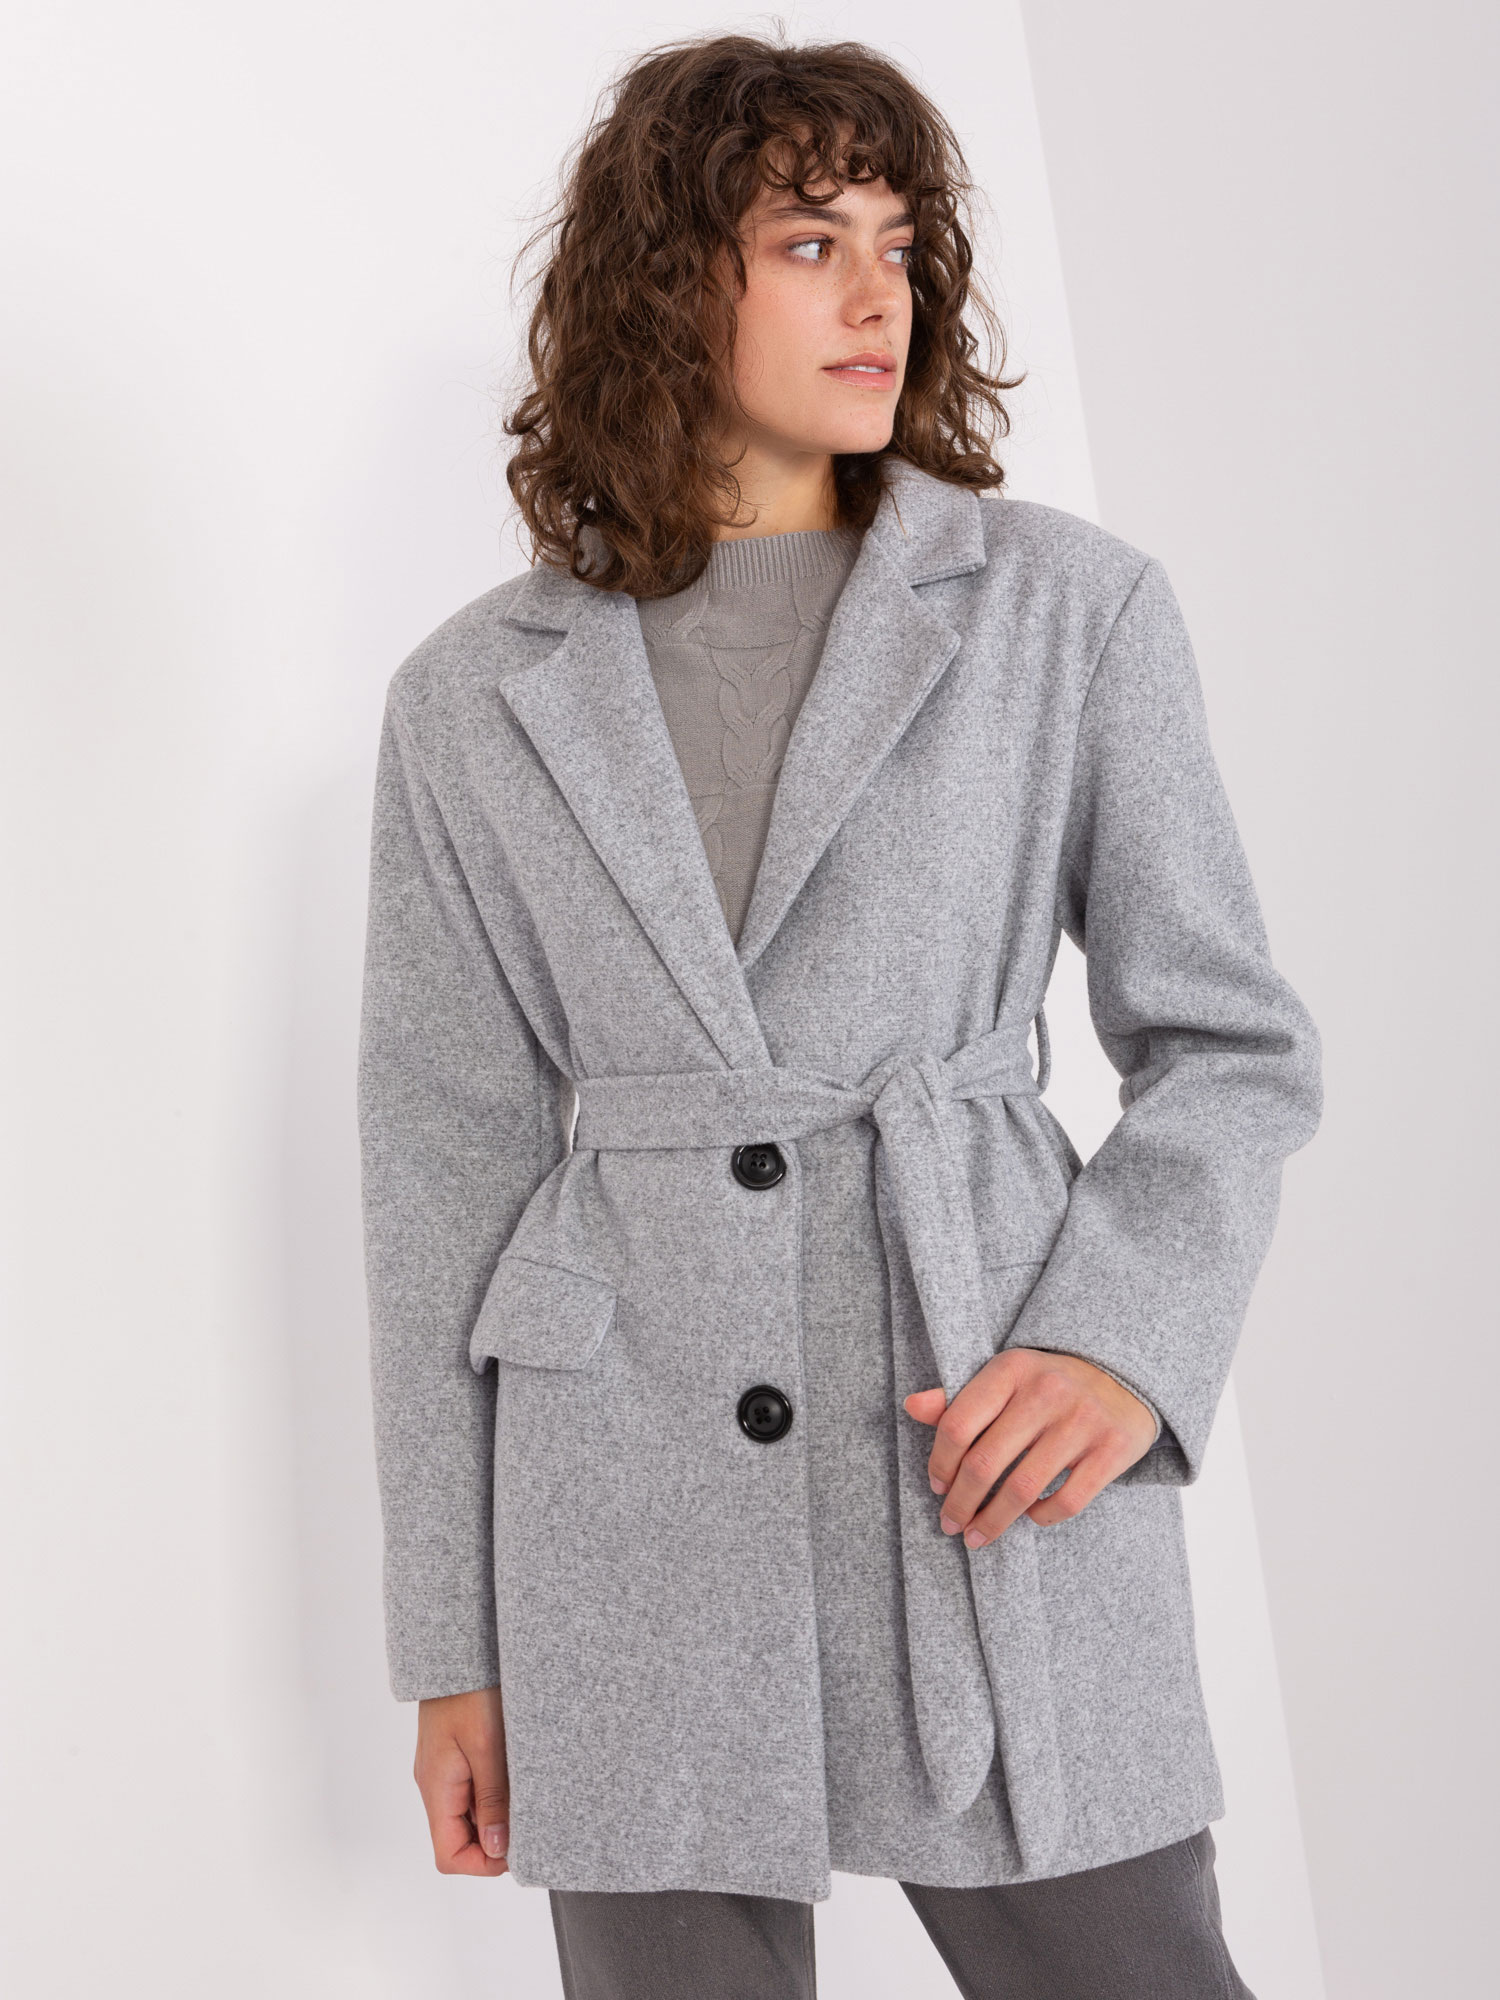 Šedý krátký kabát s páskem TW-PL-BI-2022320.01X-grey Velikost: L